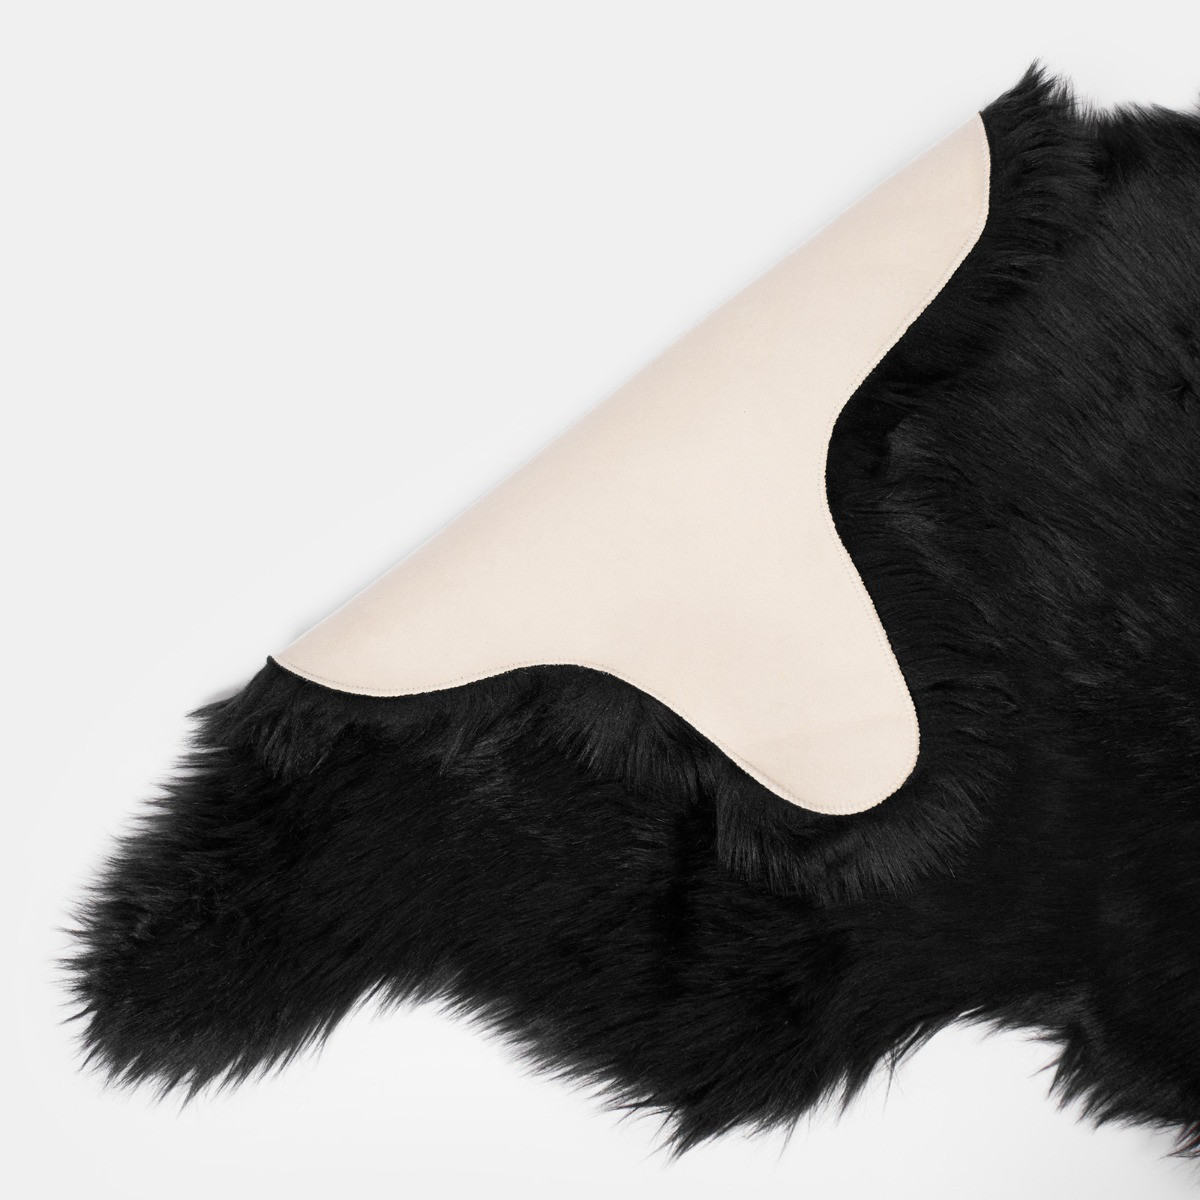 Sienna Faux Fur Sheepskin Rug, Black - 60 x 90cm>